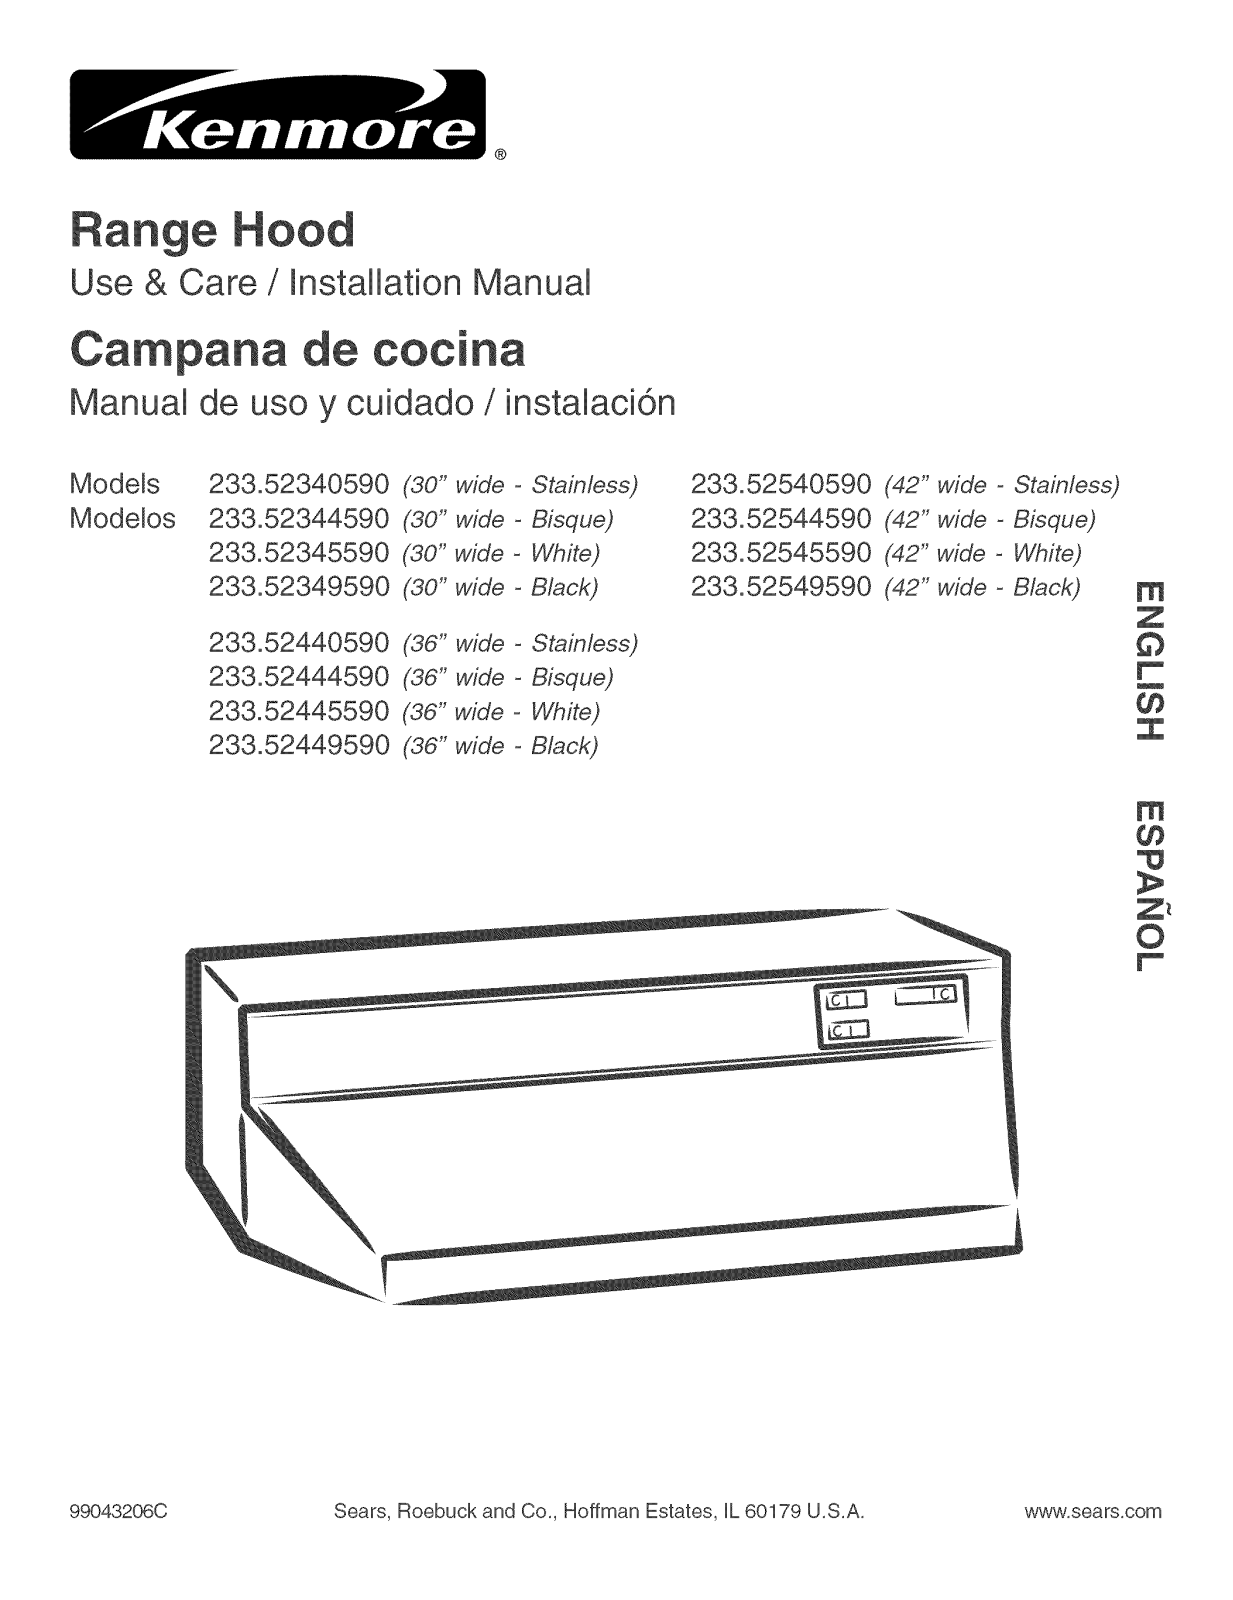 Kenmore 42 Range Hood  52544, 42 Deluxe Range Hood 5254, 36 Deluxe Range Hood 5244, 30 Range Hood  52344, 36 Range Hood  52444 Installation Guide